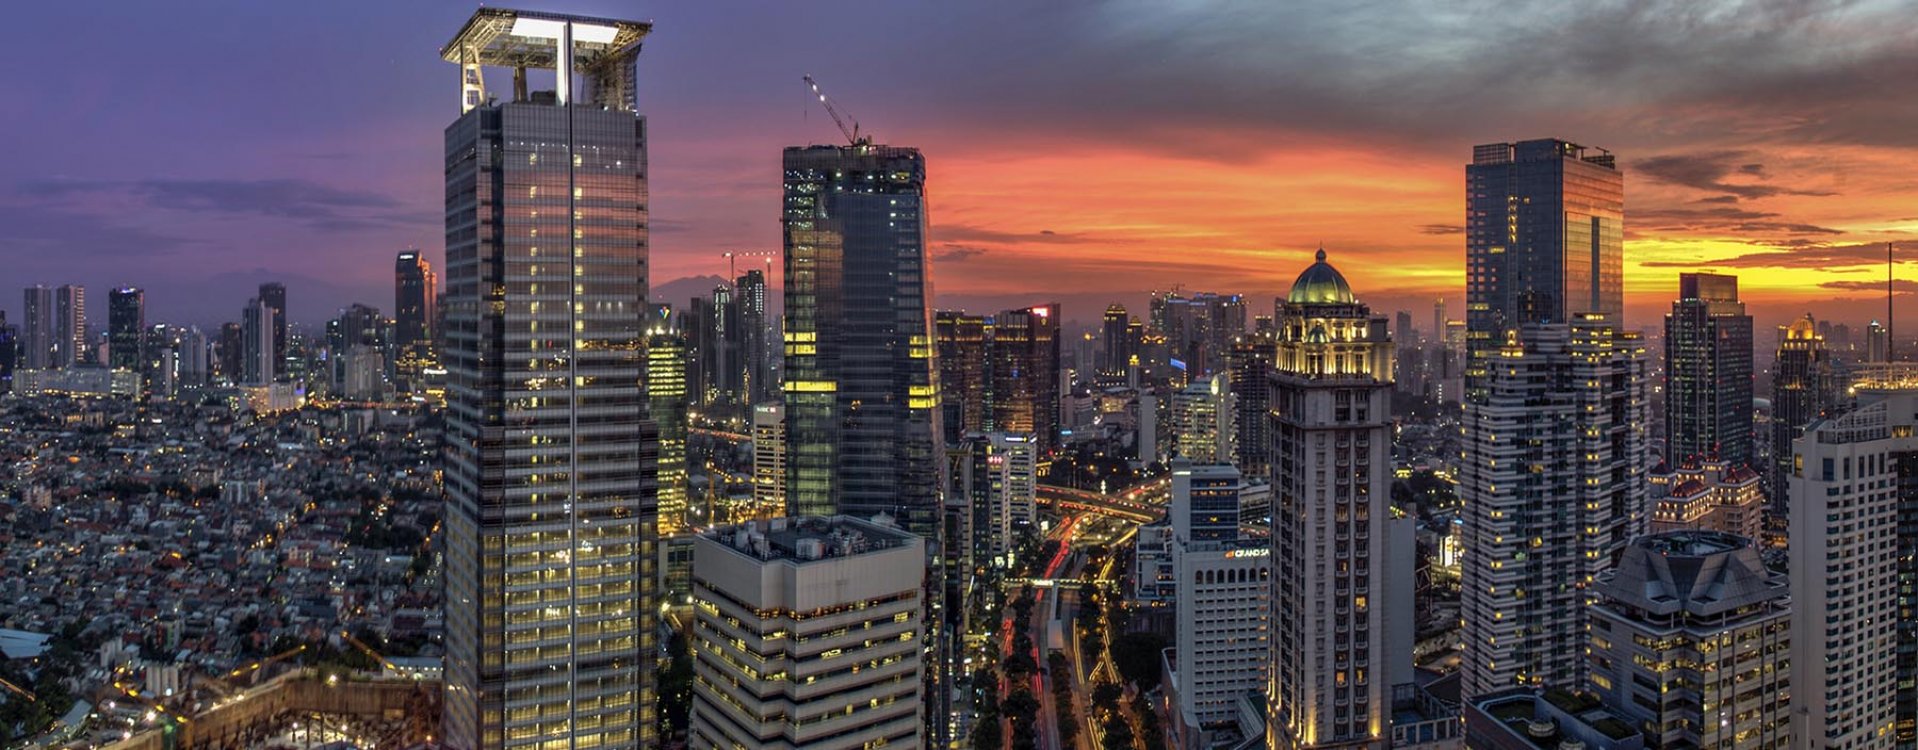 Jakarta city